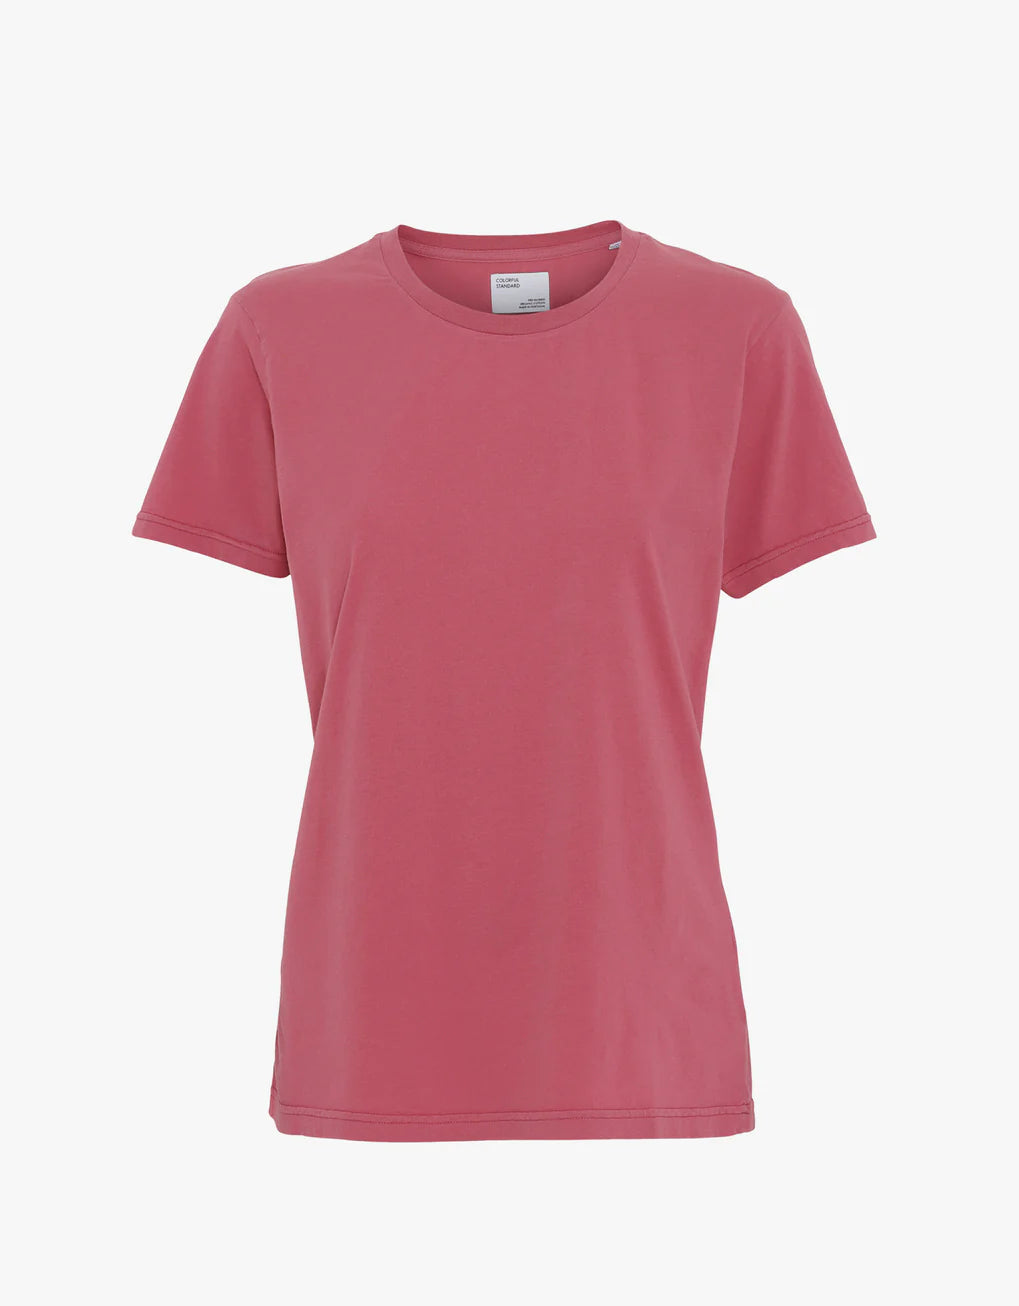 A women's Colorful Standard Light Organic Tee shirt.